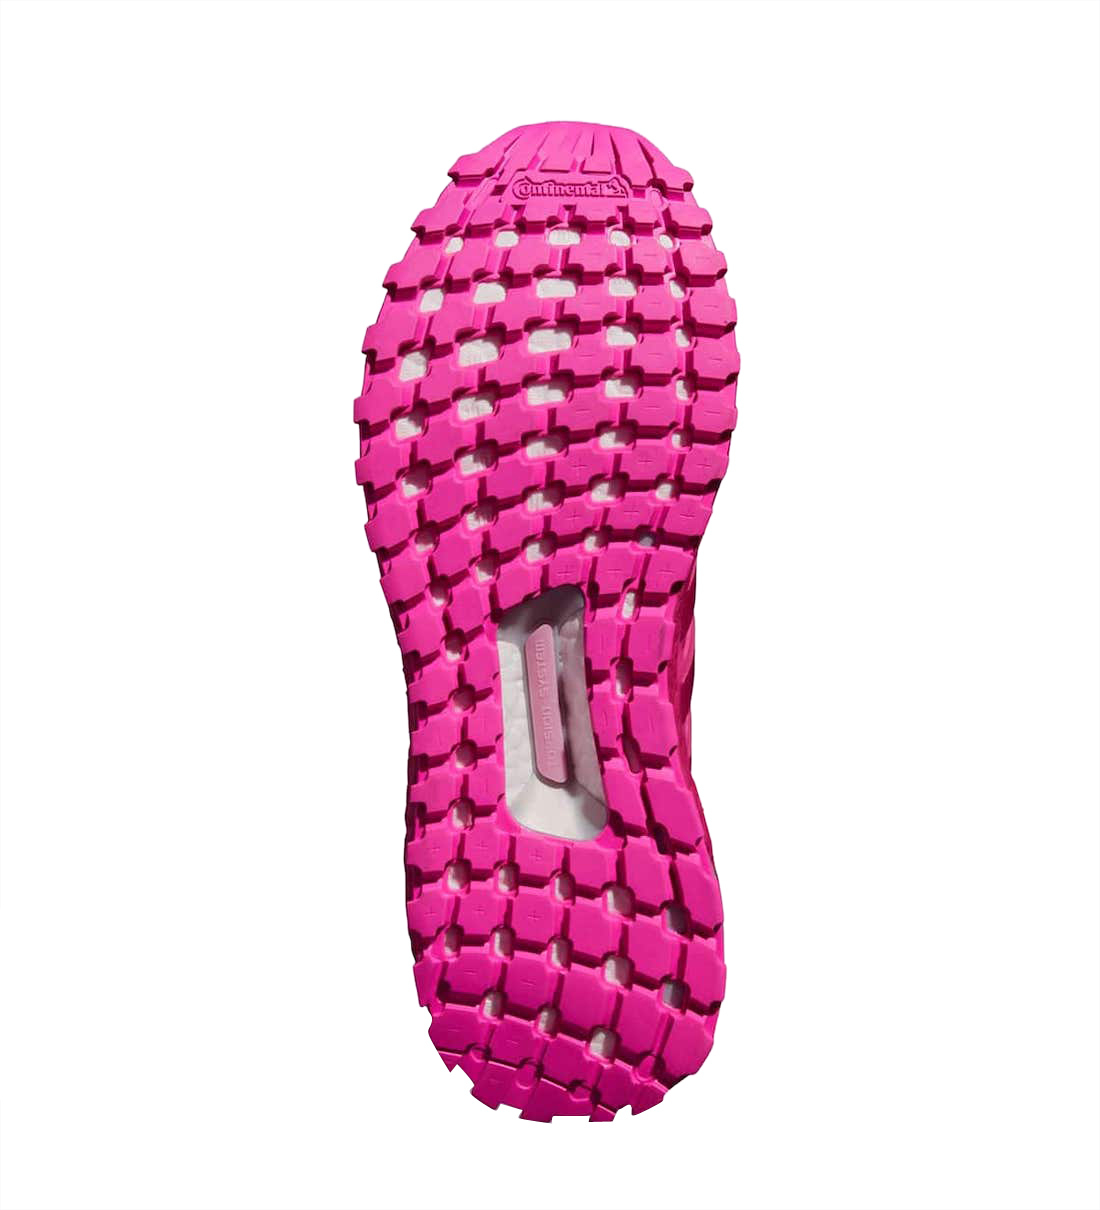 Ivy Park x adidas Ultra Boost OG Pink GX2236 - KicksOnFire.com